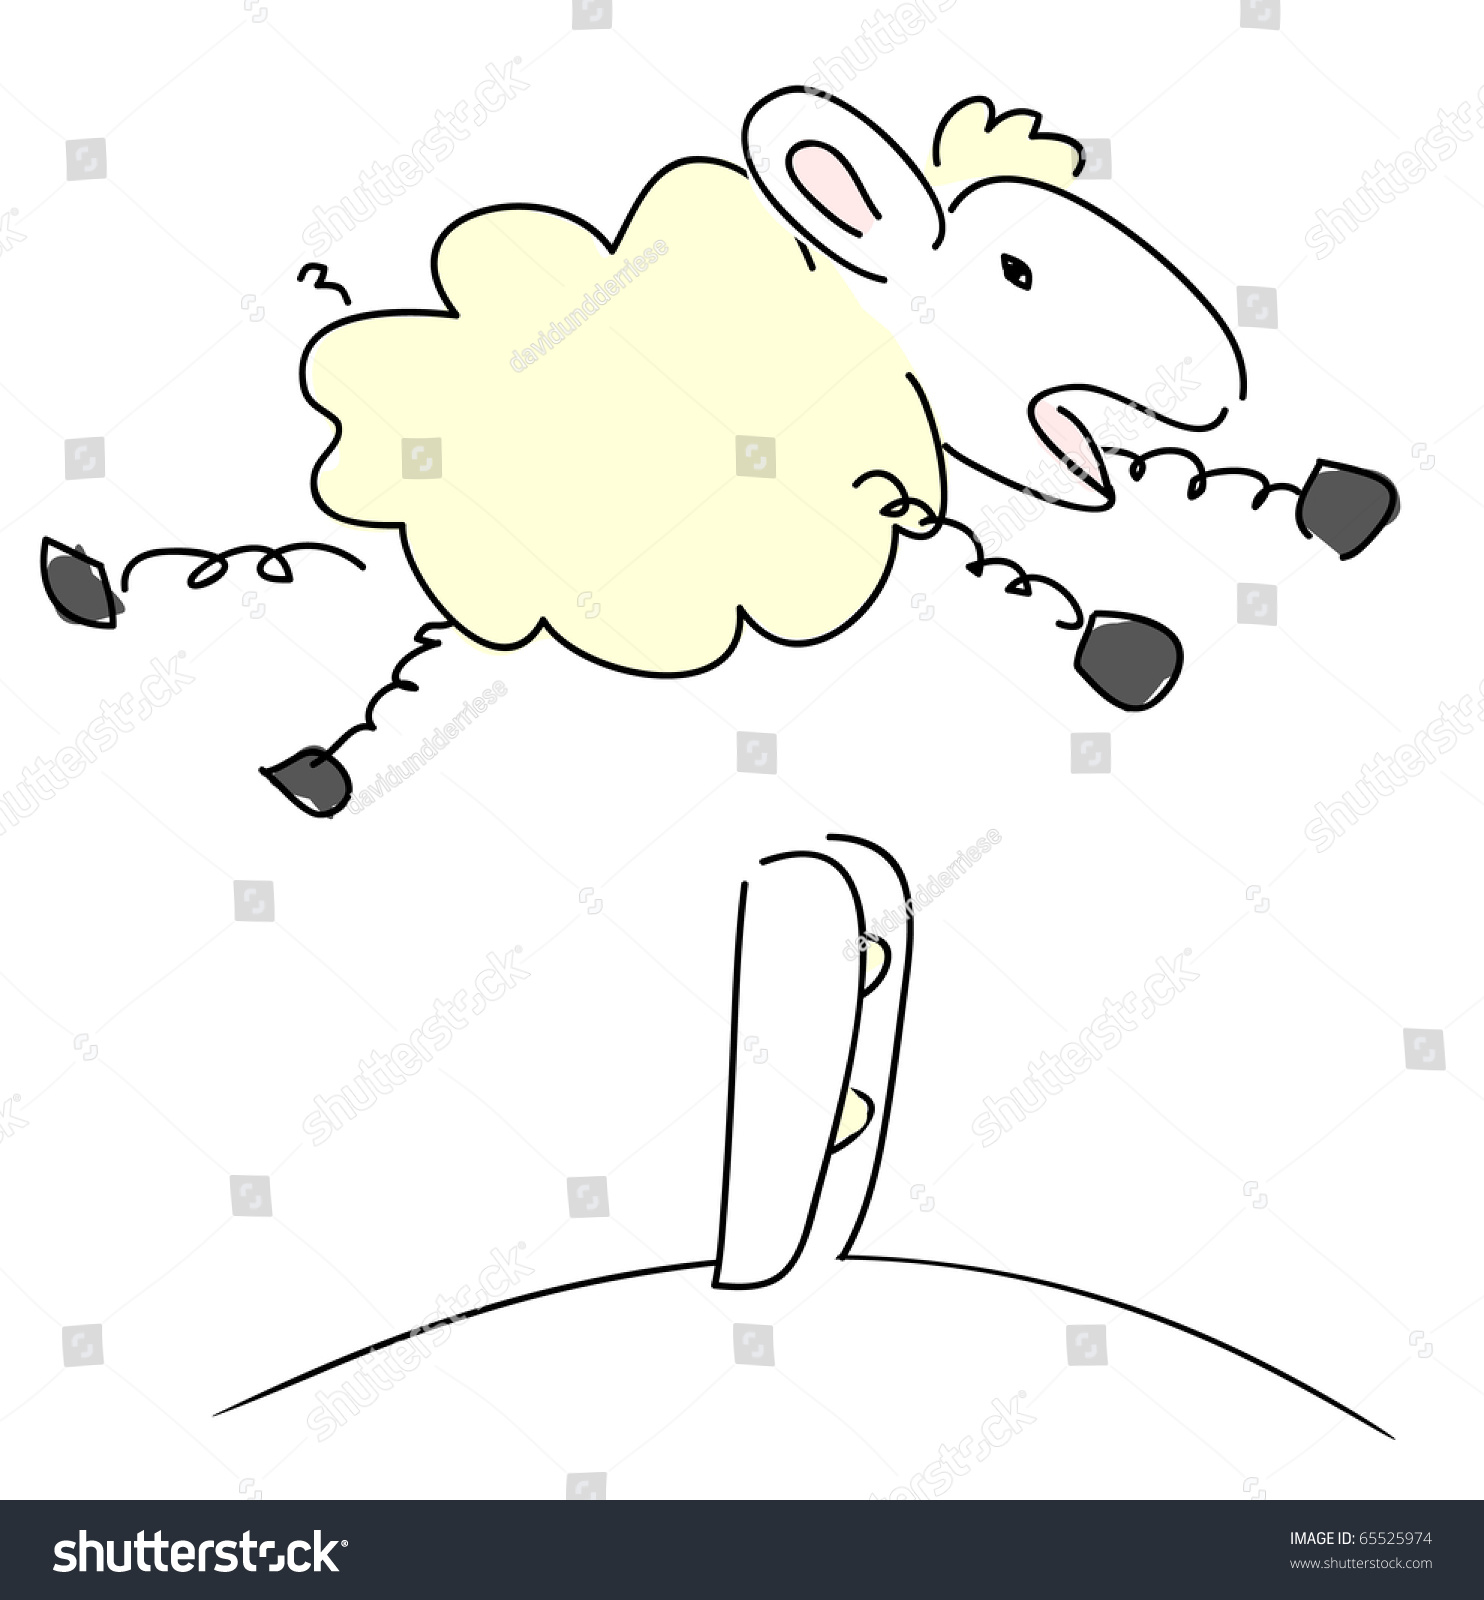 Jumping Sheep - Vector. - 65525974 : Shutterstock